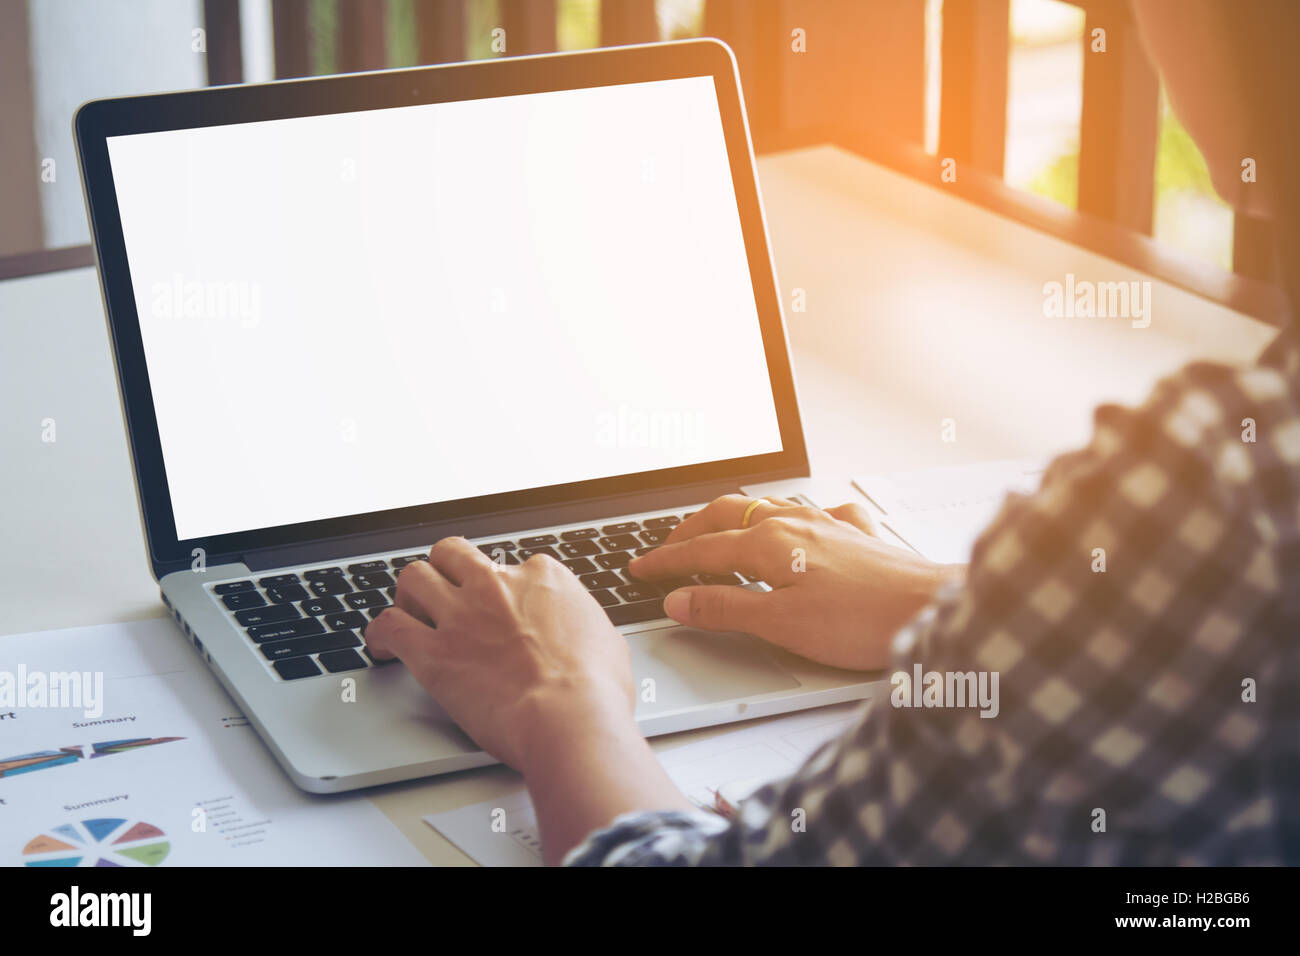 Business donna digitando sulla tastiera portatile lavorando su business report. La schermata vuota con copia spazio per il testo Foto Stock